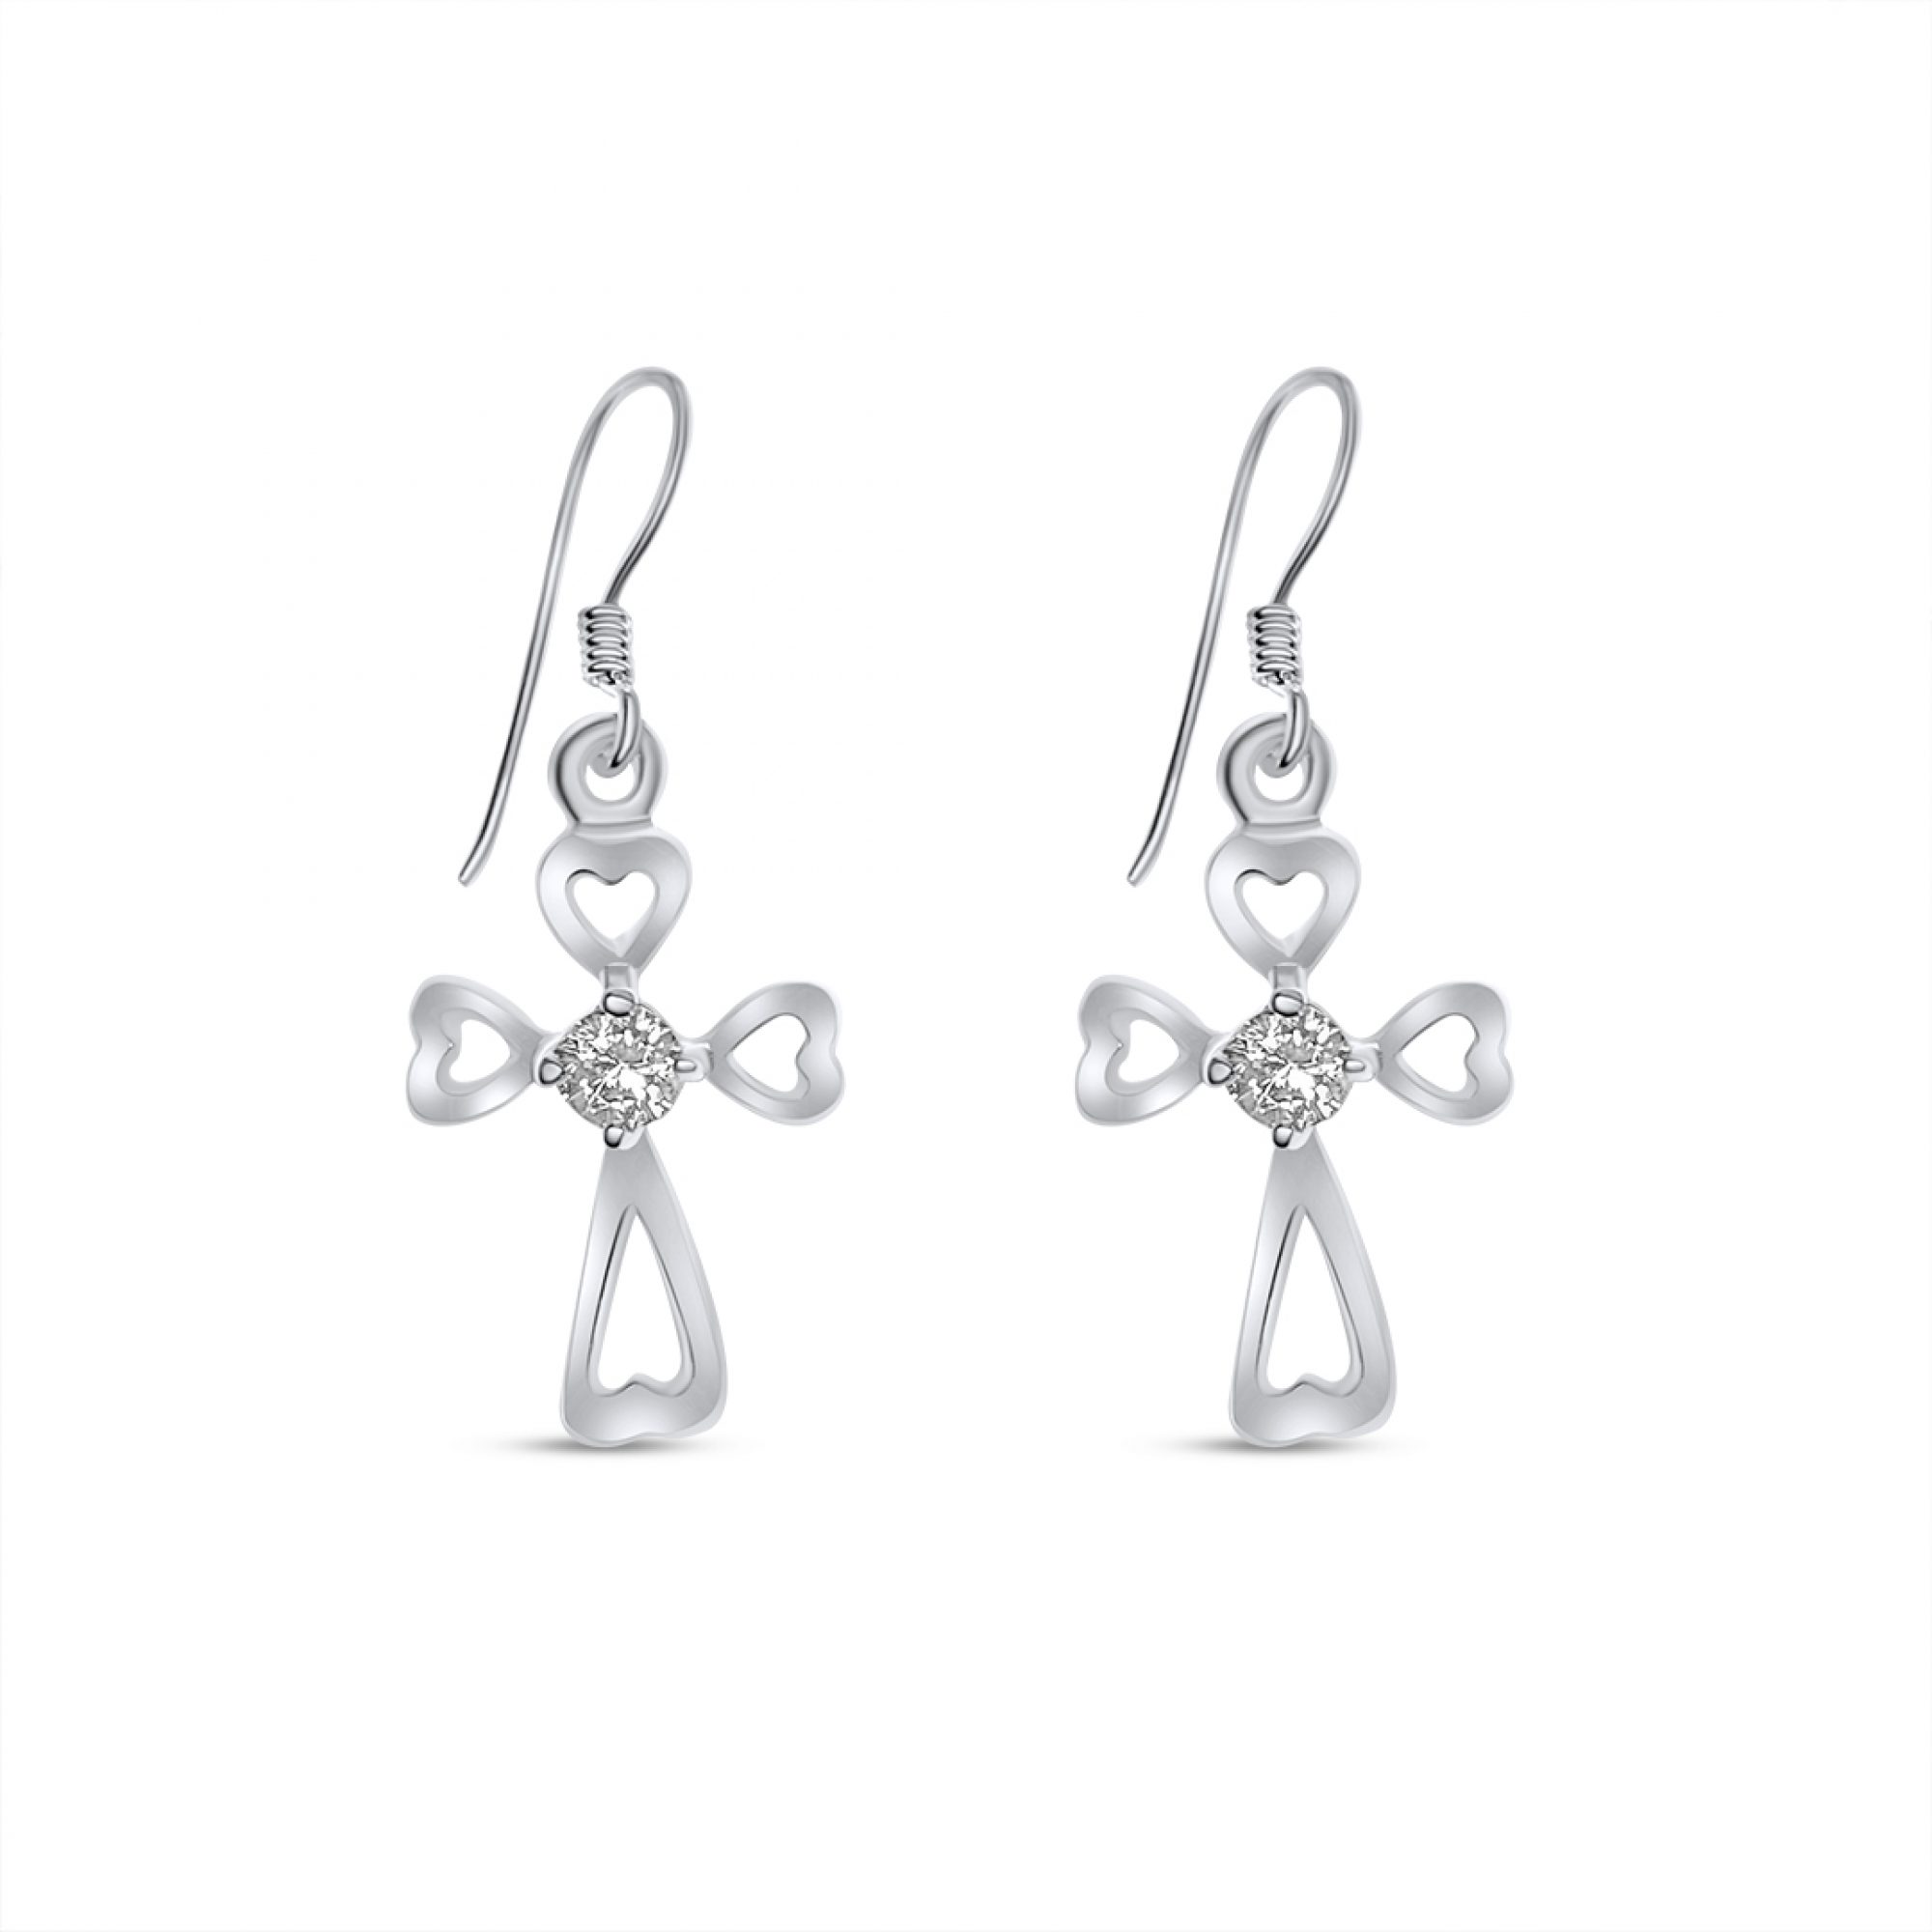 Silver cross earrings with zircon stones